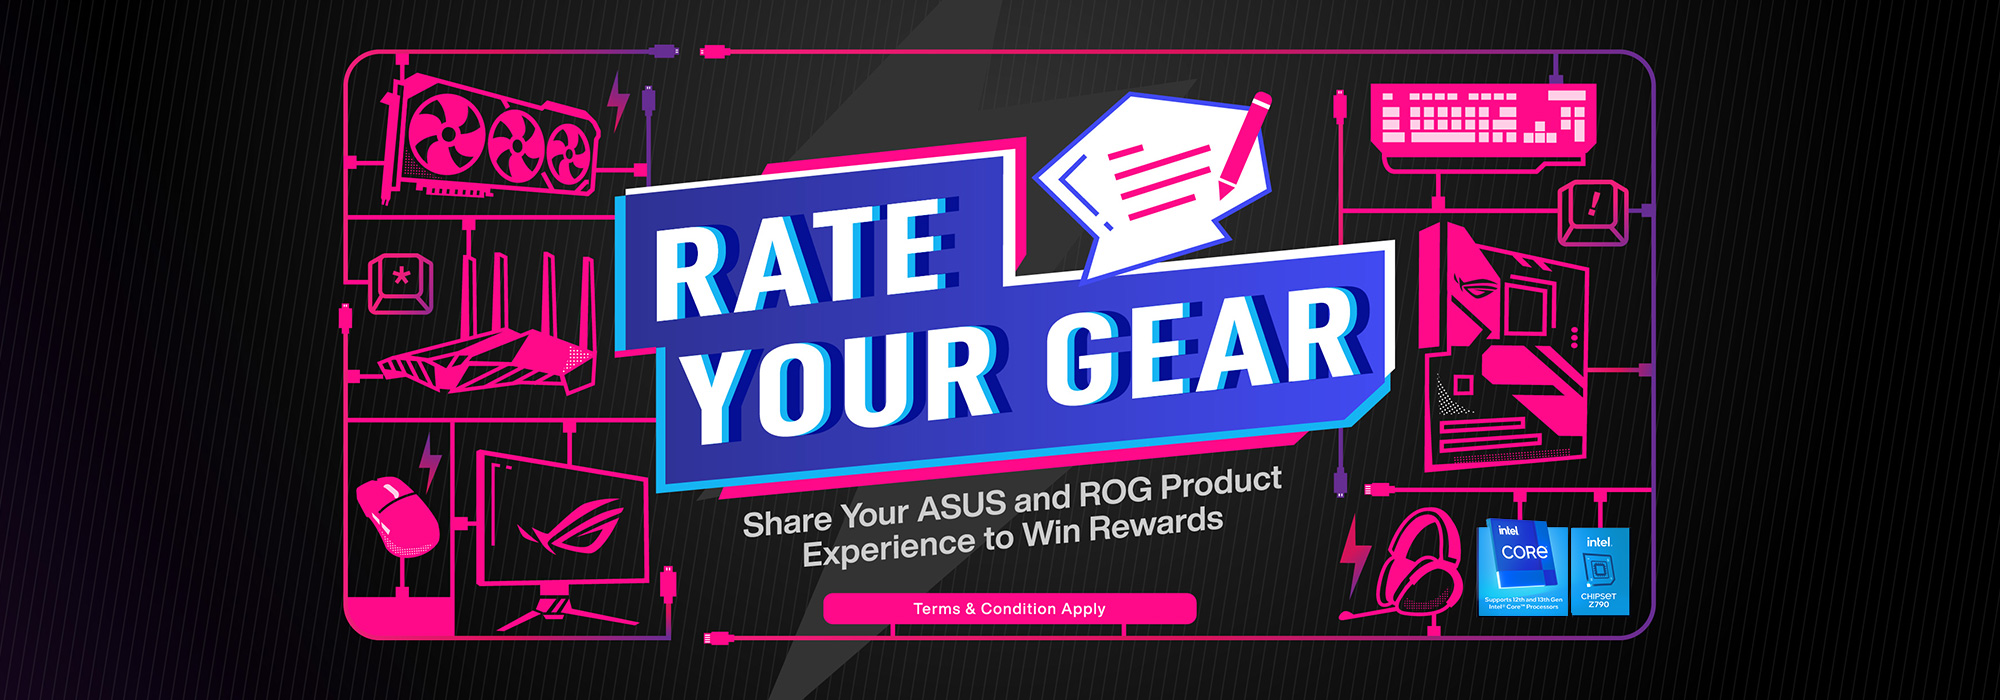 RATE YOUR GEAR - Partagez votre expérience des produits ASUS et ROG pour gagner des récompenses (Conditions générales d'utilisation)